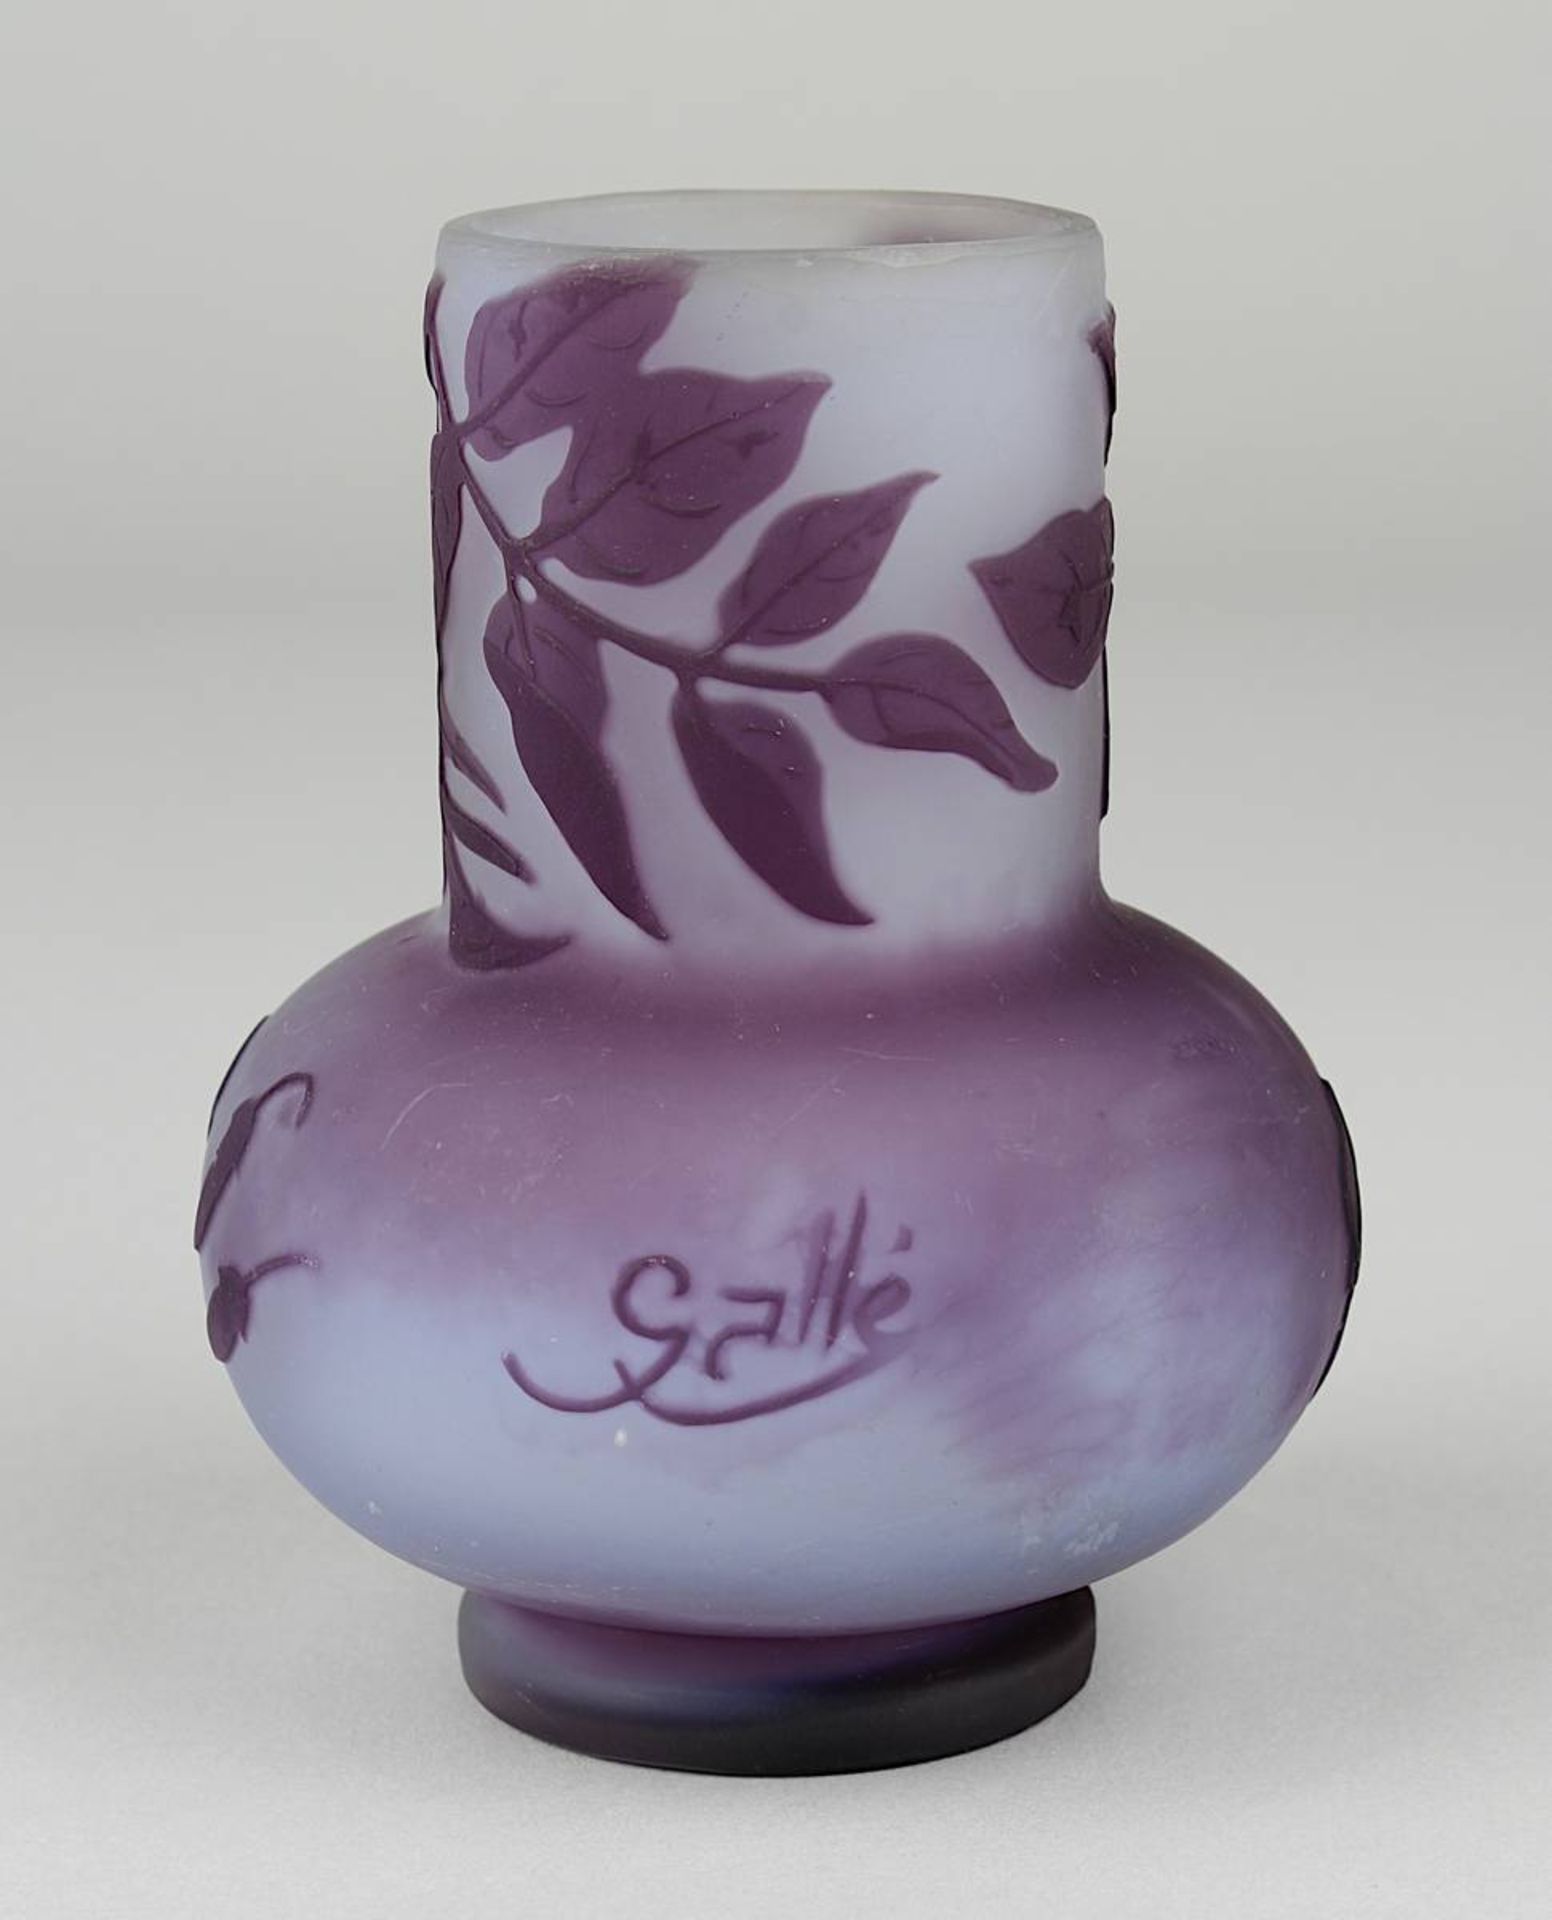 Gallé Miniatur-Jugendstil-Vase mit Dekor von Glycinien, Nancy um 1920, matt geätzter Klarglaskorpus, - Image 3 of 4